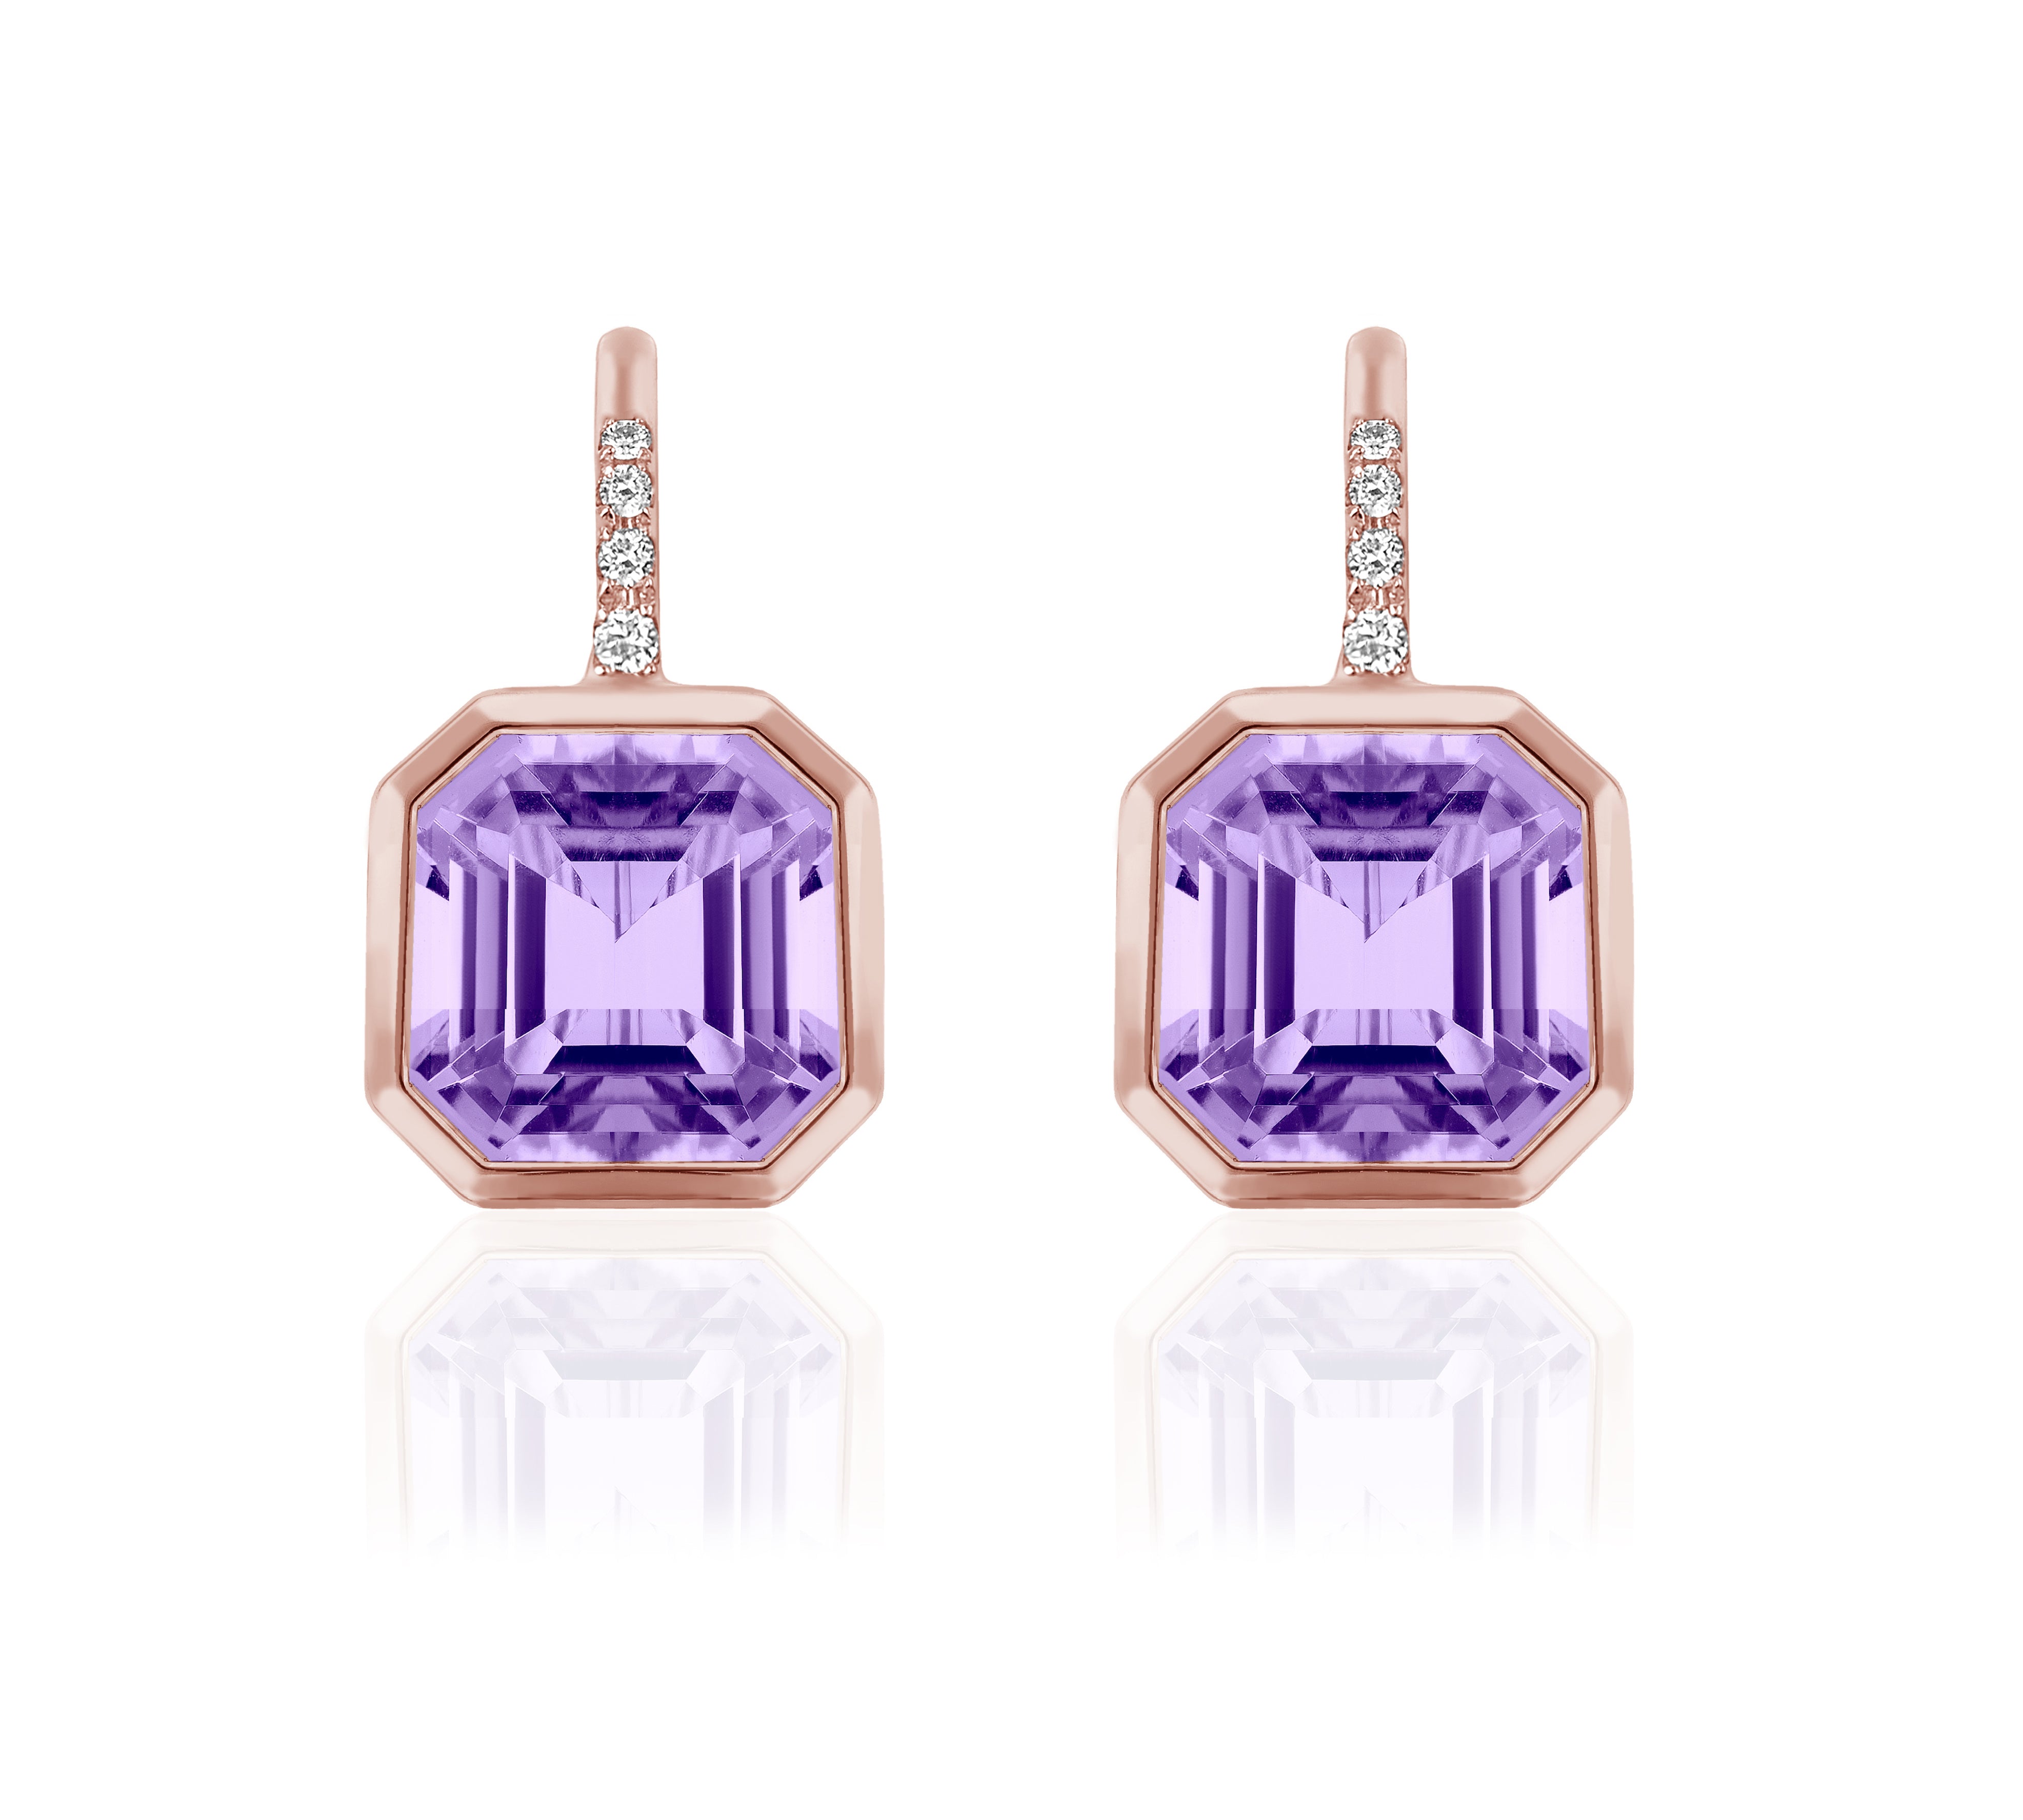 Asscher Cut Lavender Amethyst Earrings on Wire with Diamonds Drop Goshwara   